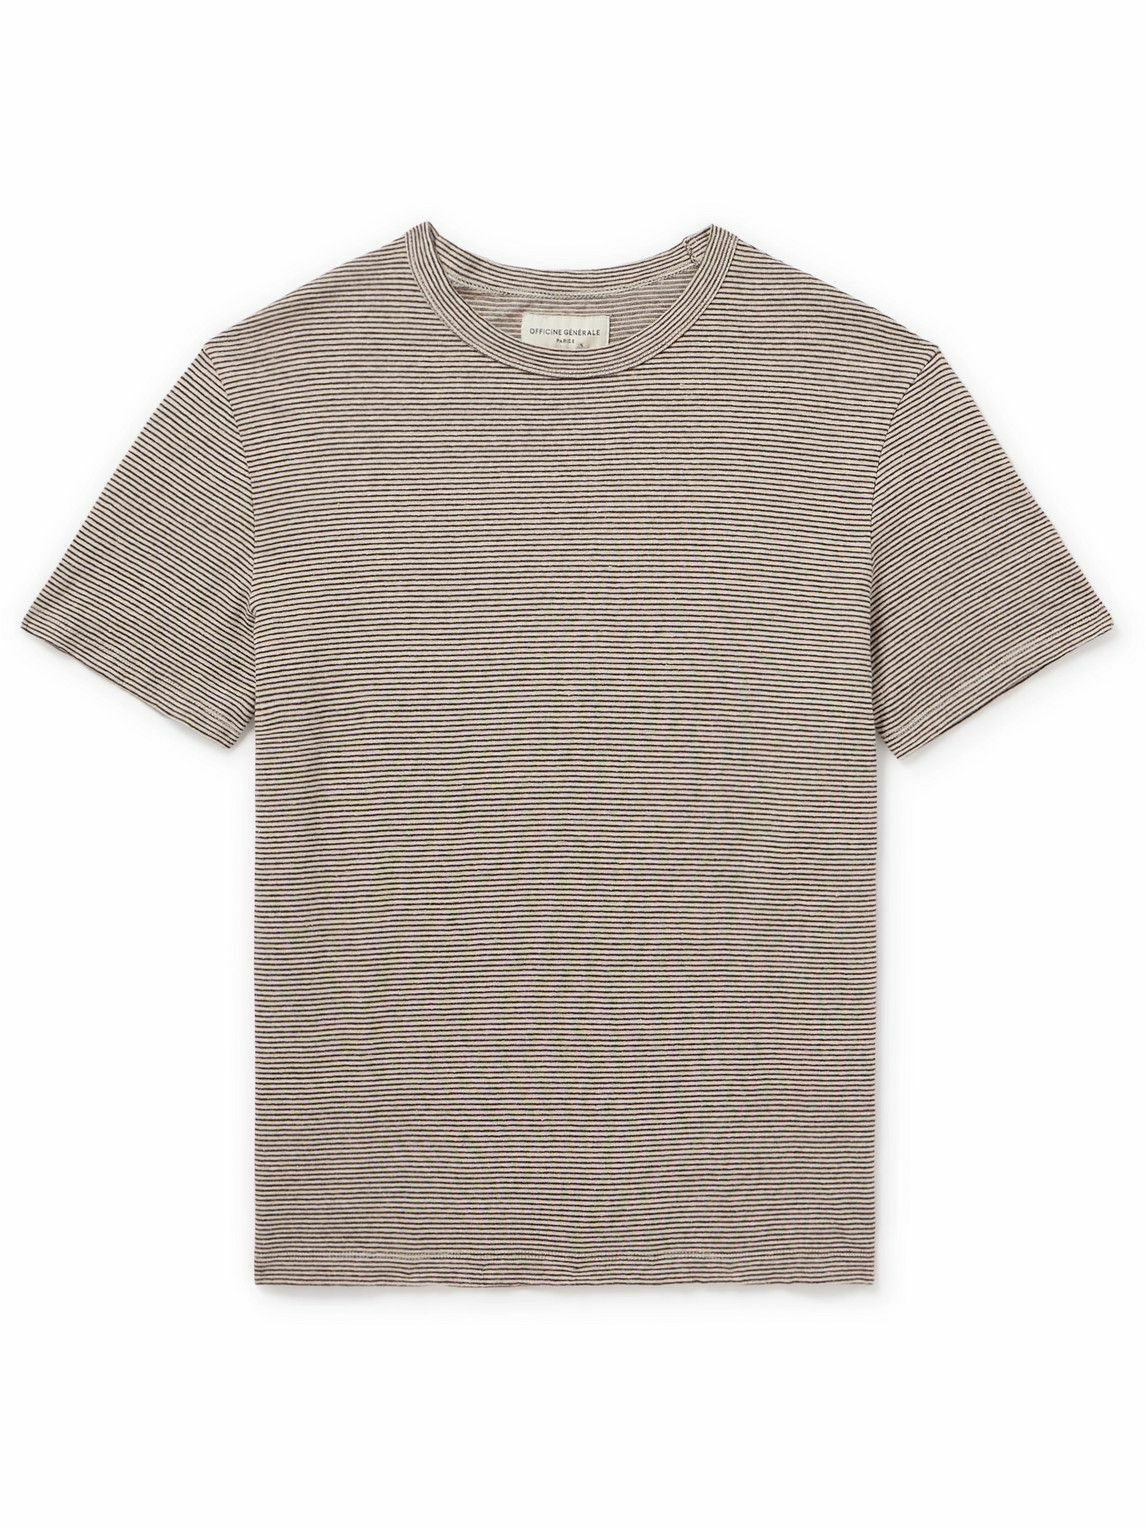 Photo: Officine Générale - Striped Cotton and Linen-Blend Shirt - Brown